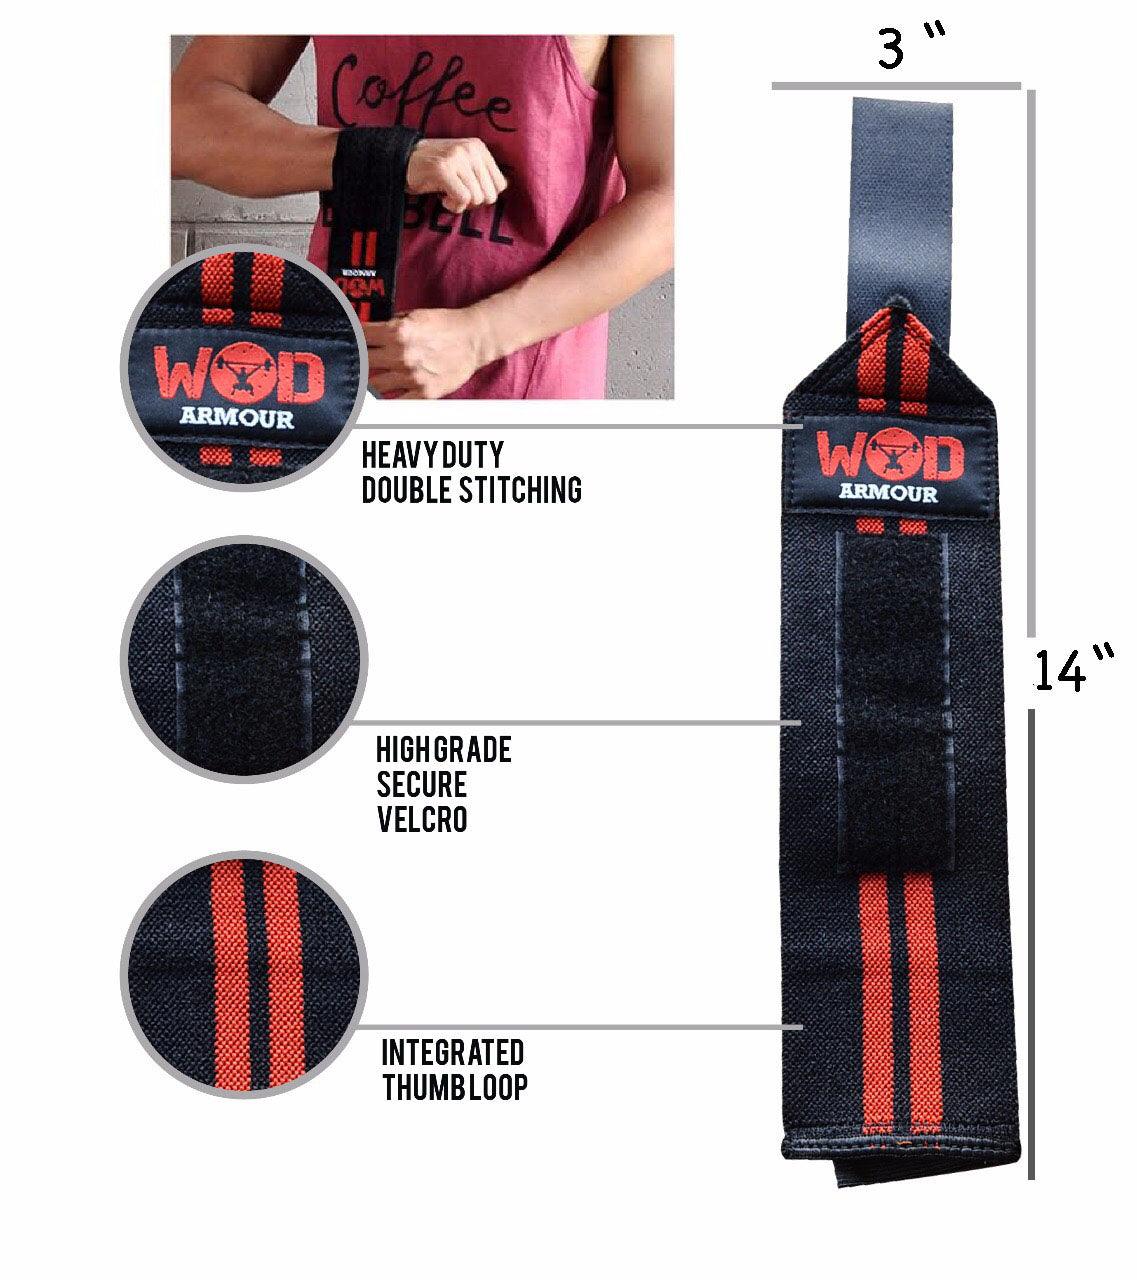 Wrist strap – wodarmour